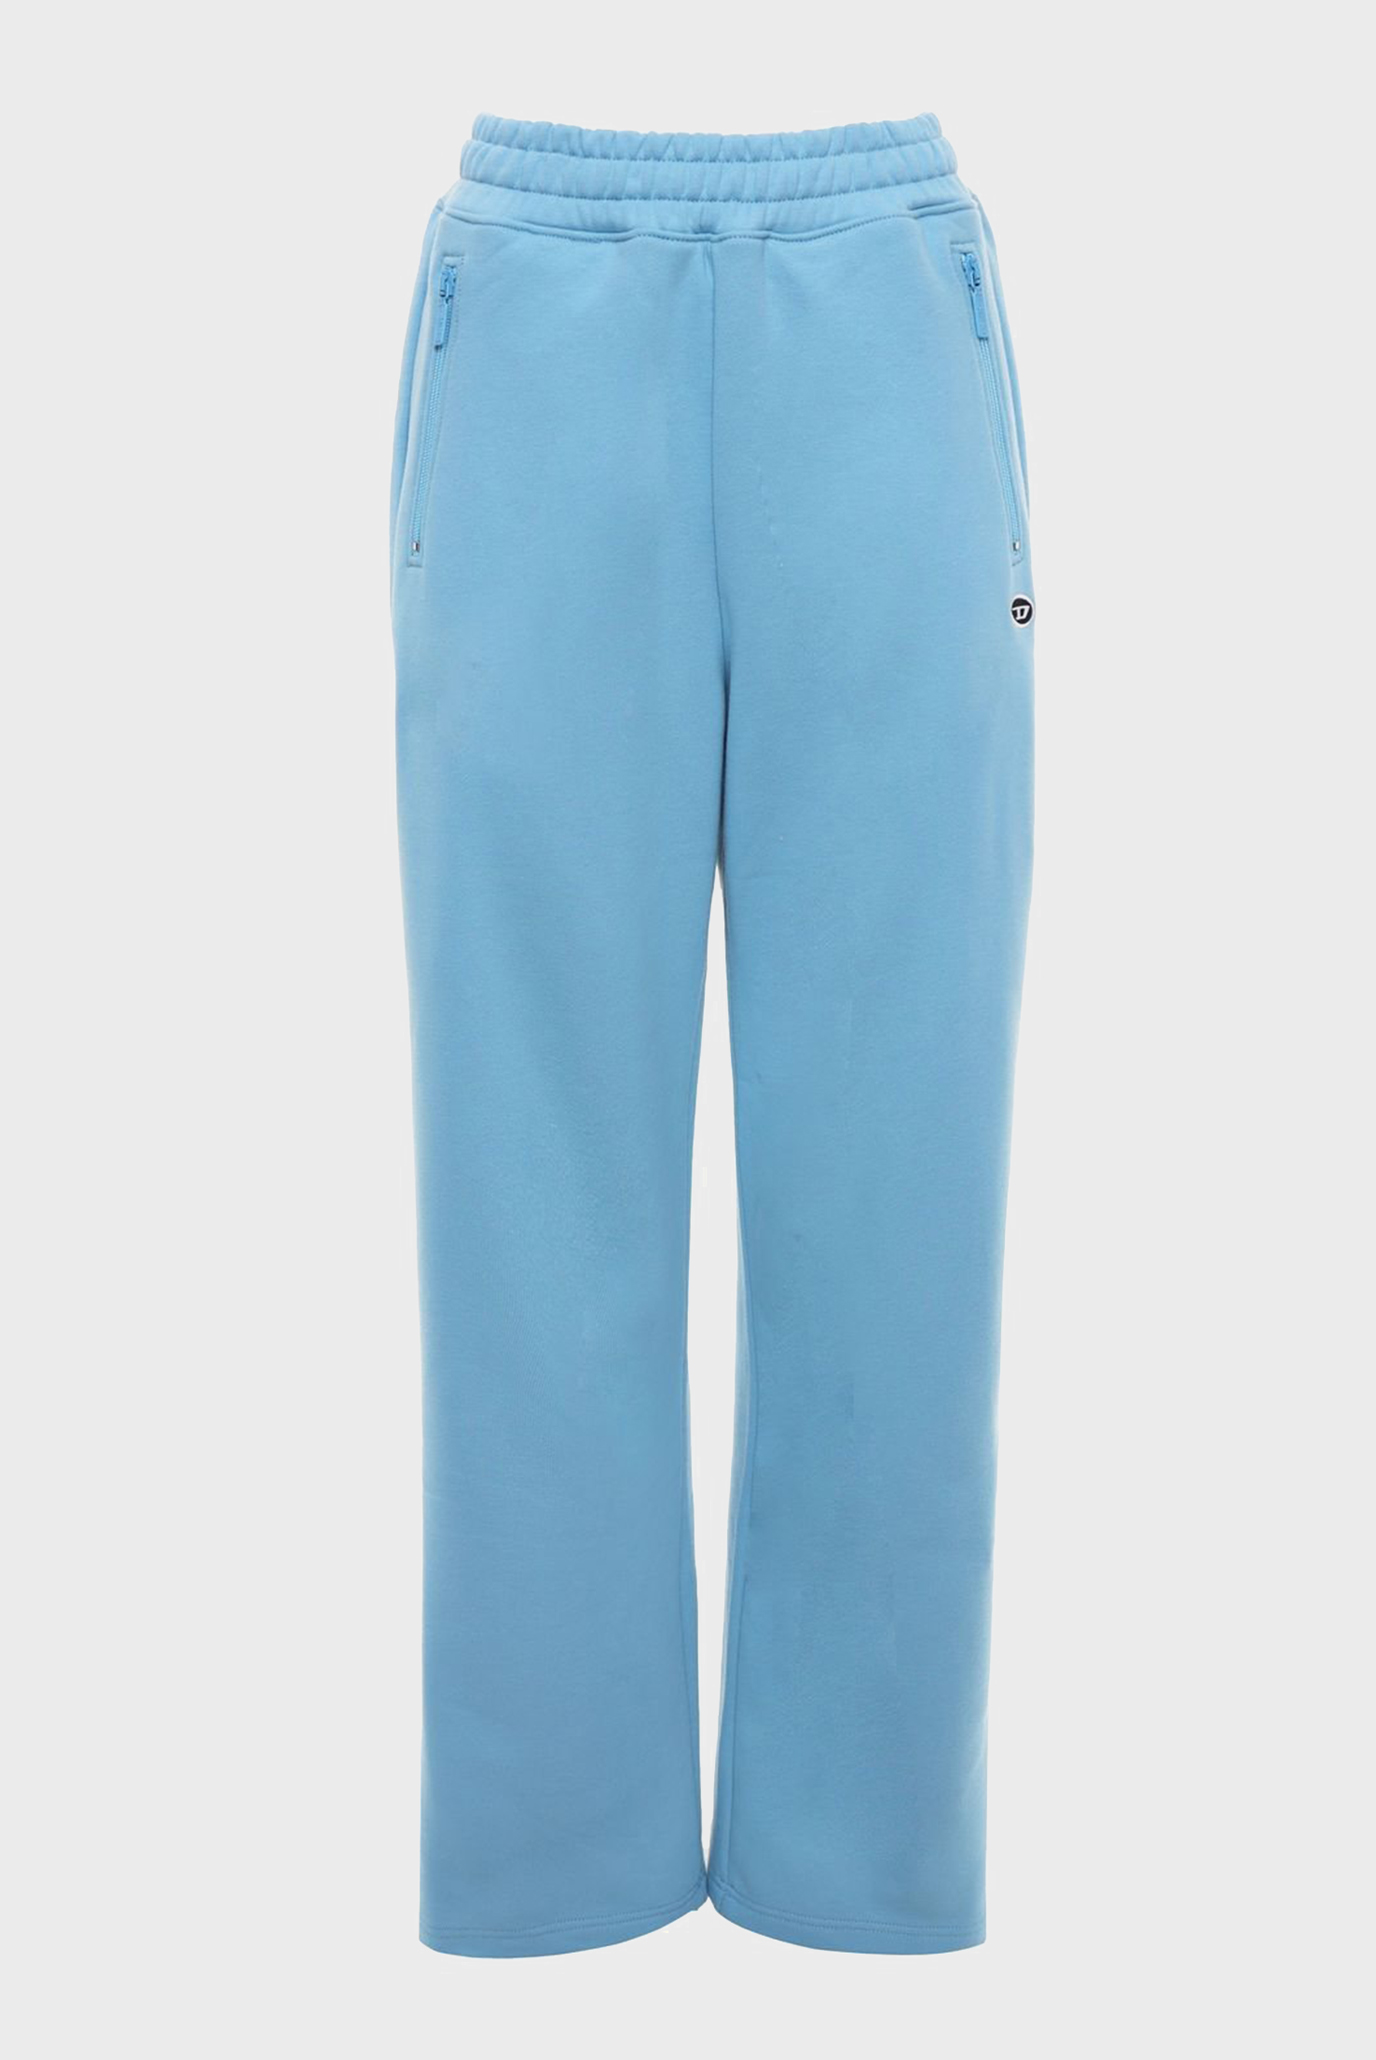 Женские голубые спортивные брюки P-ZAM-DOVAL-PJ 1